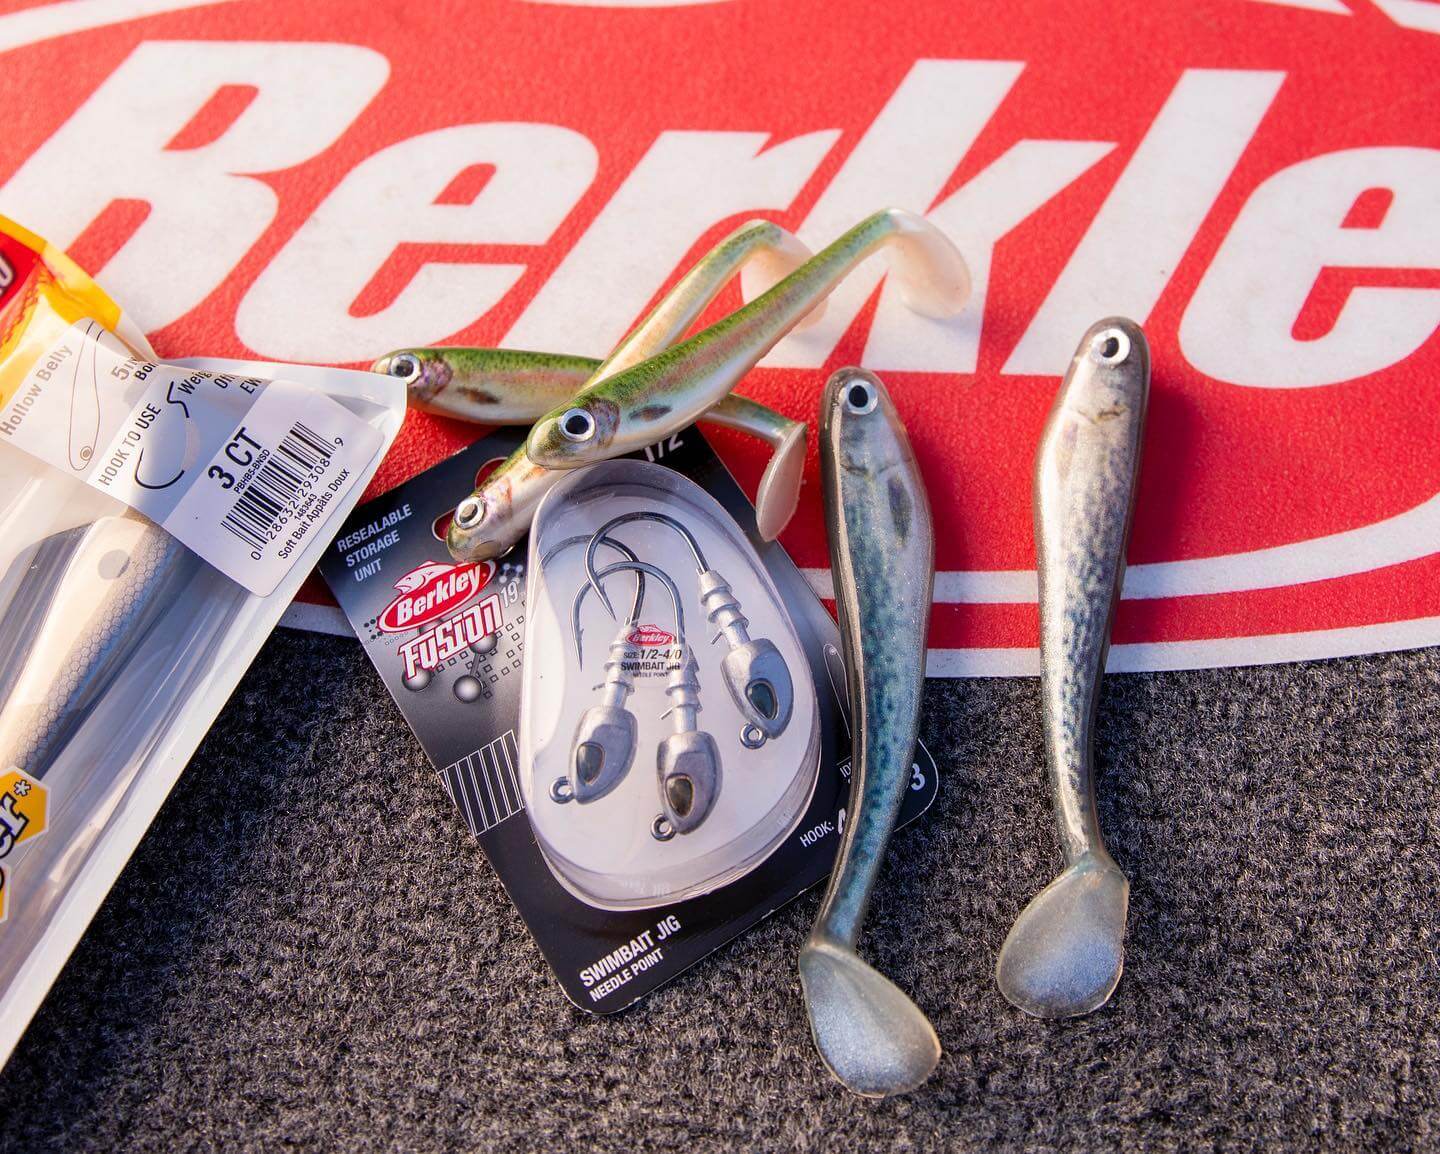 accessoires de pêche de la marque berkley